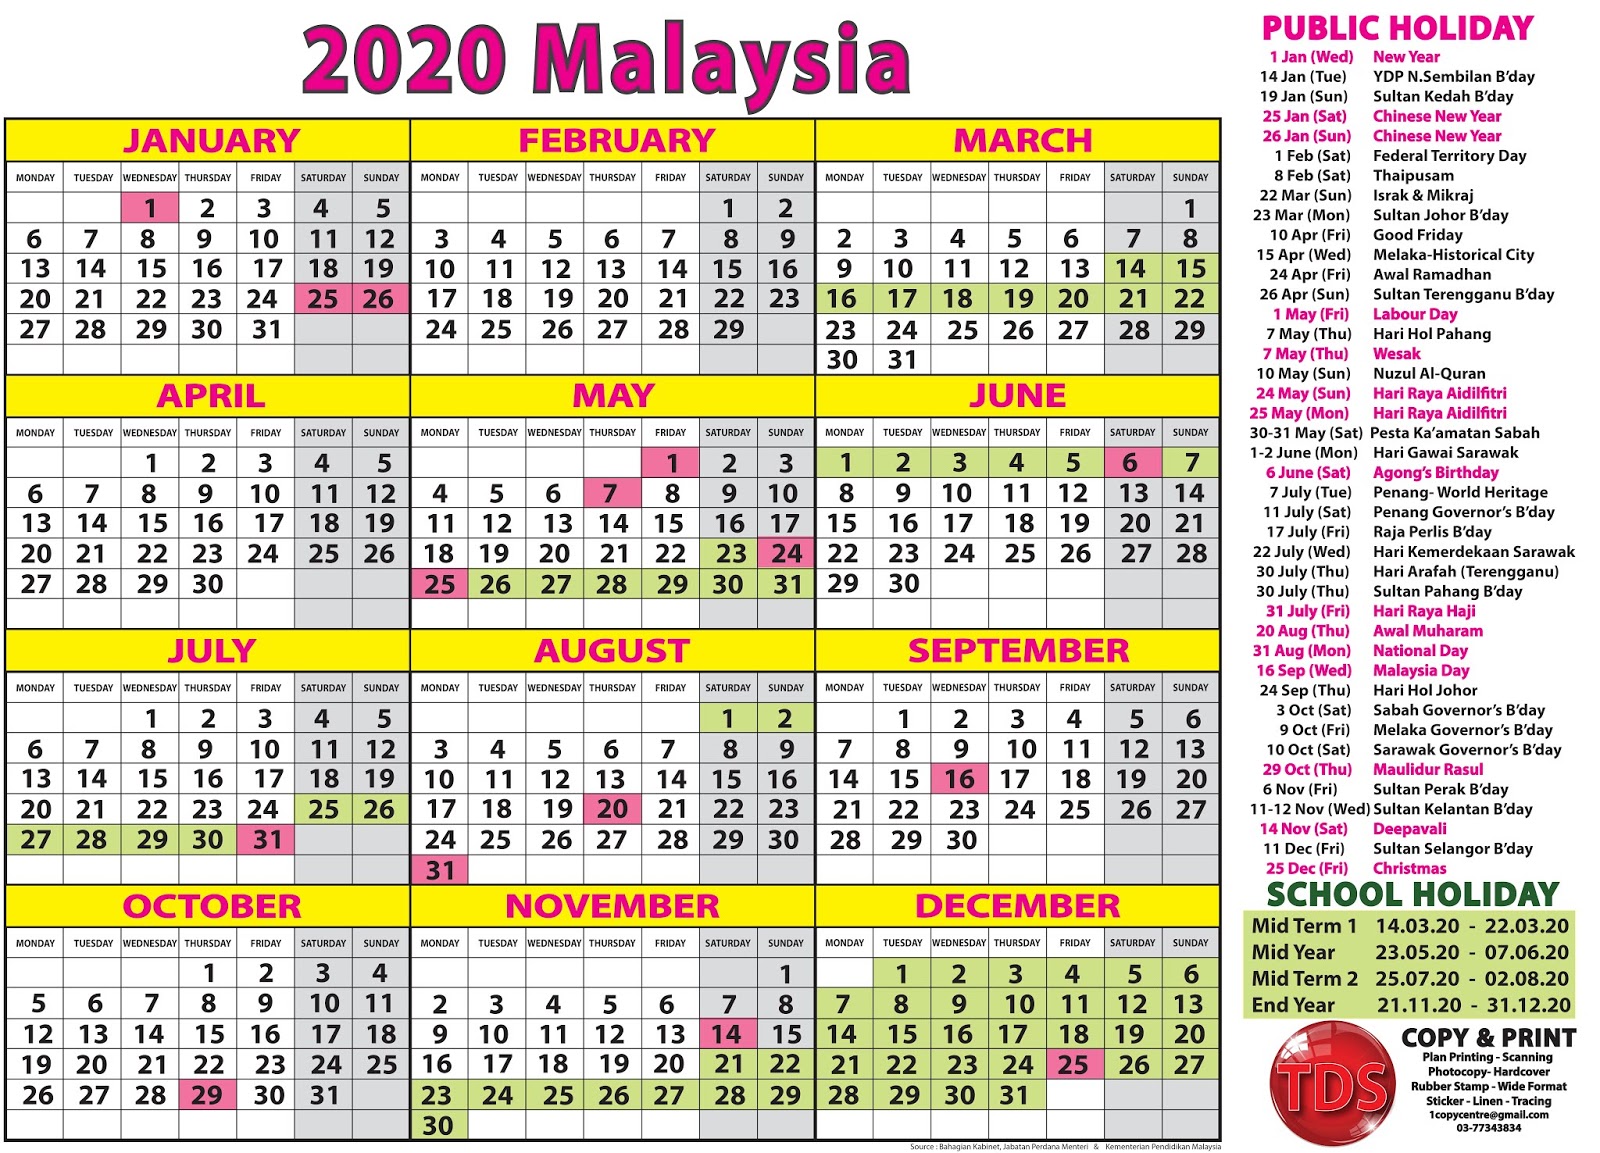 2020 Calendar Malaysia Kalendar 2020 Malaysia